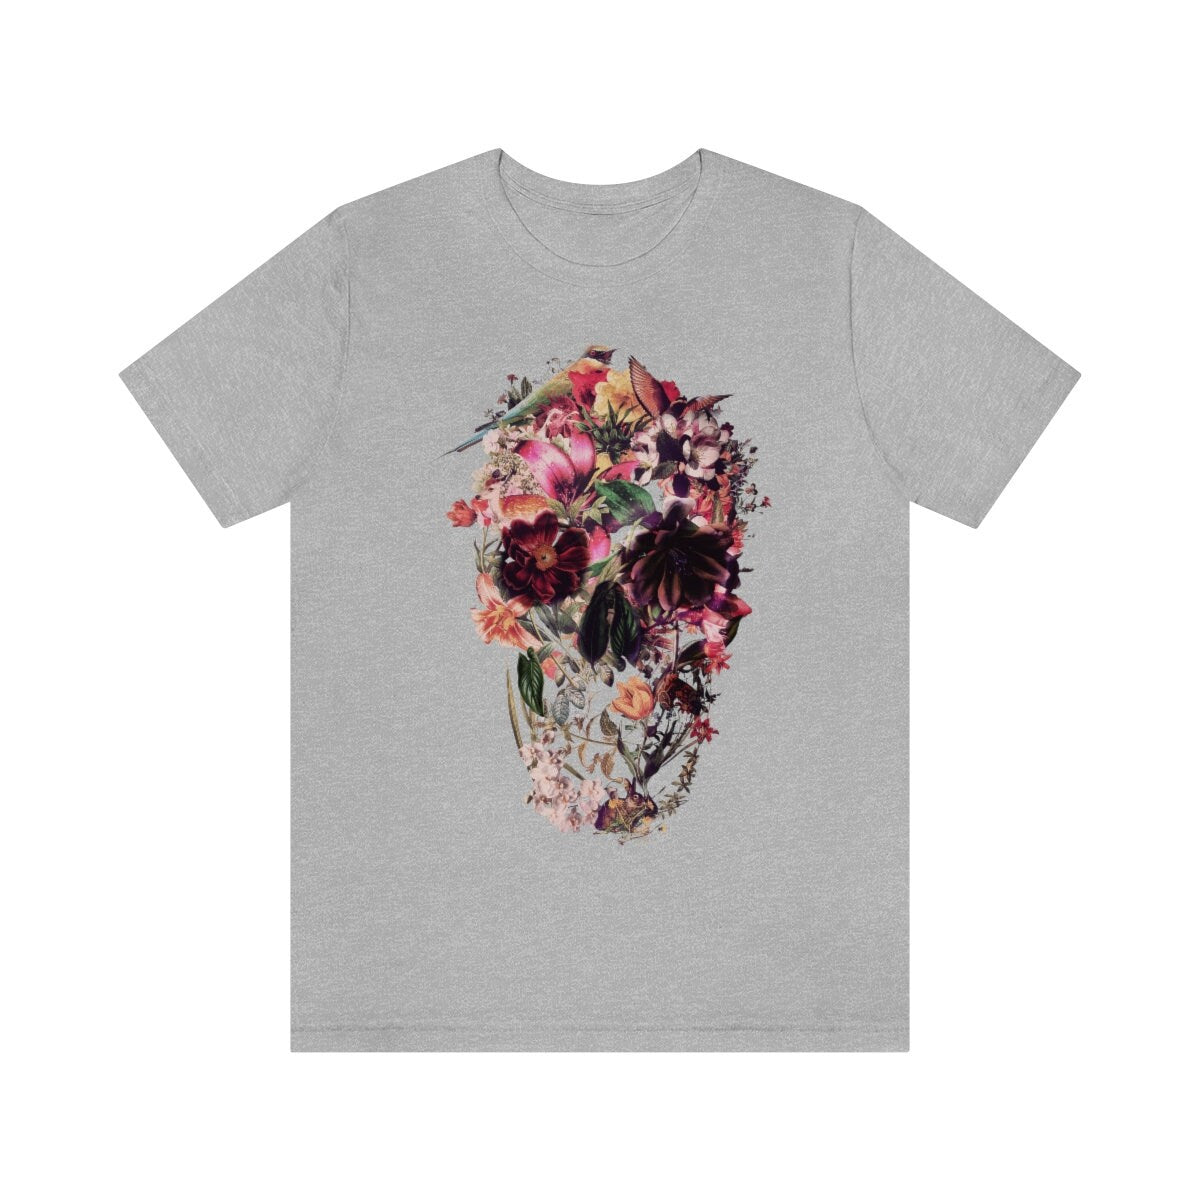 Skull Men's T-shirt, Sugar Skull Art Mens T Shirt, New Skull Art Print Gift For Him